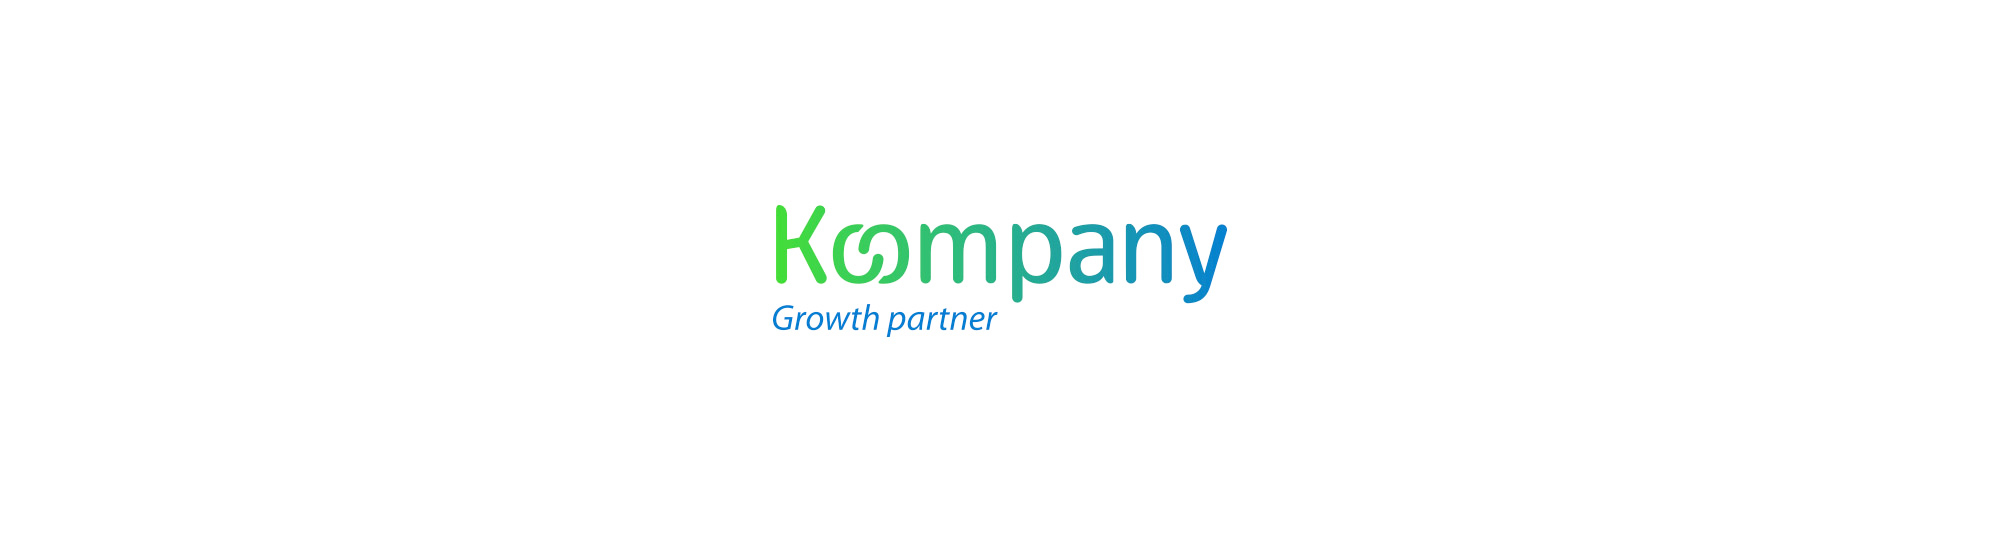 Logotipo diseñado para la marca koompany, empresa gallega de marketing digital